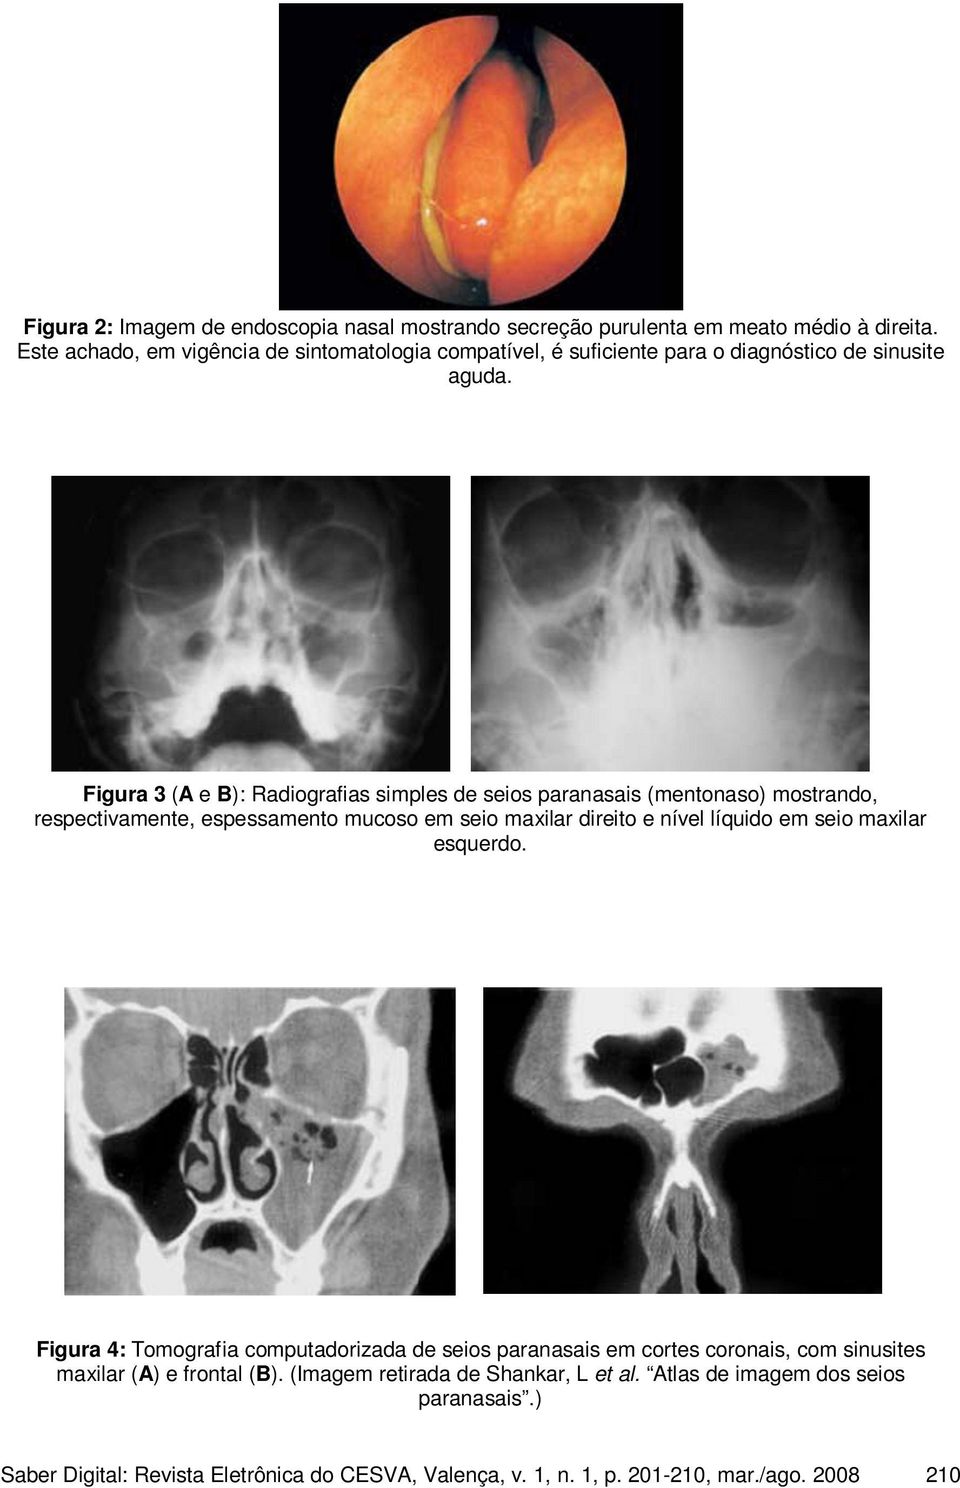 Figura 3 (A e B): Radiografias simples de seios paranasais (mentonaso) mostrando, respectivamente, espessamento mucoso em seio maxilar direito e nível líquido em seio